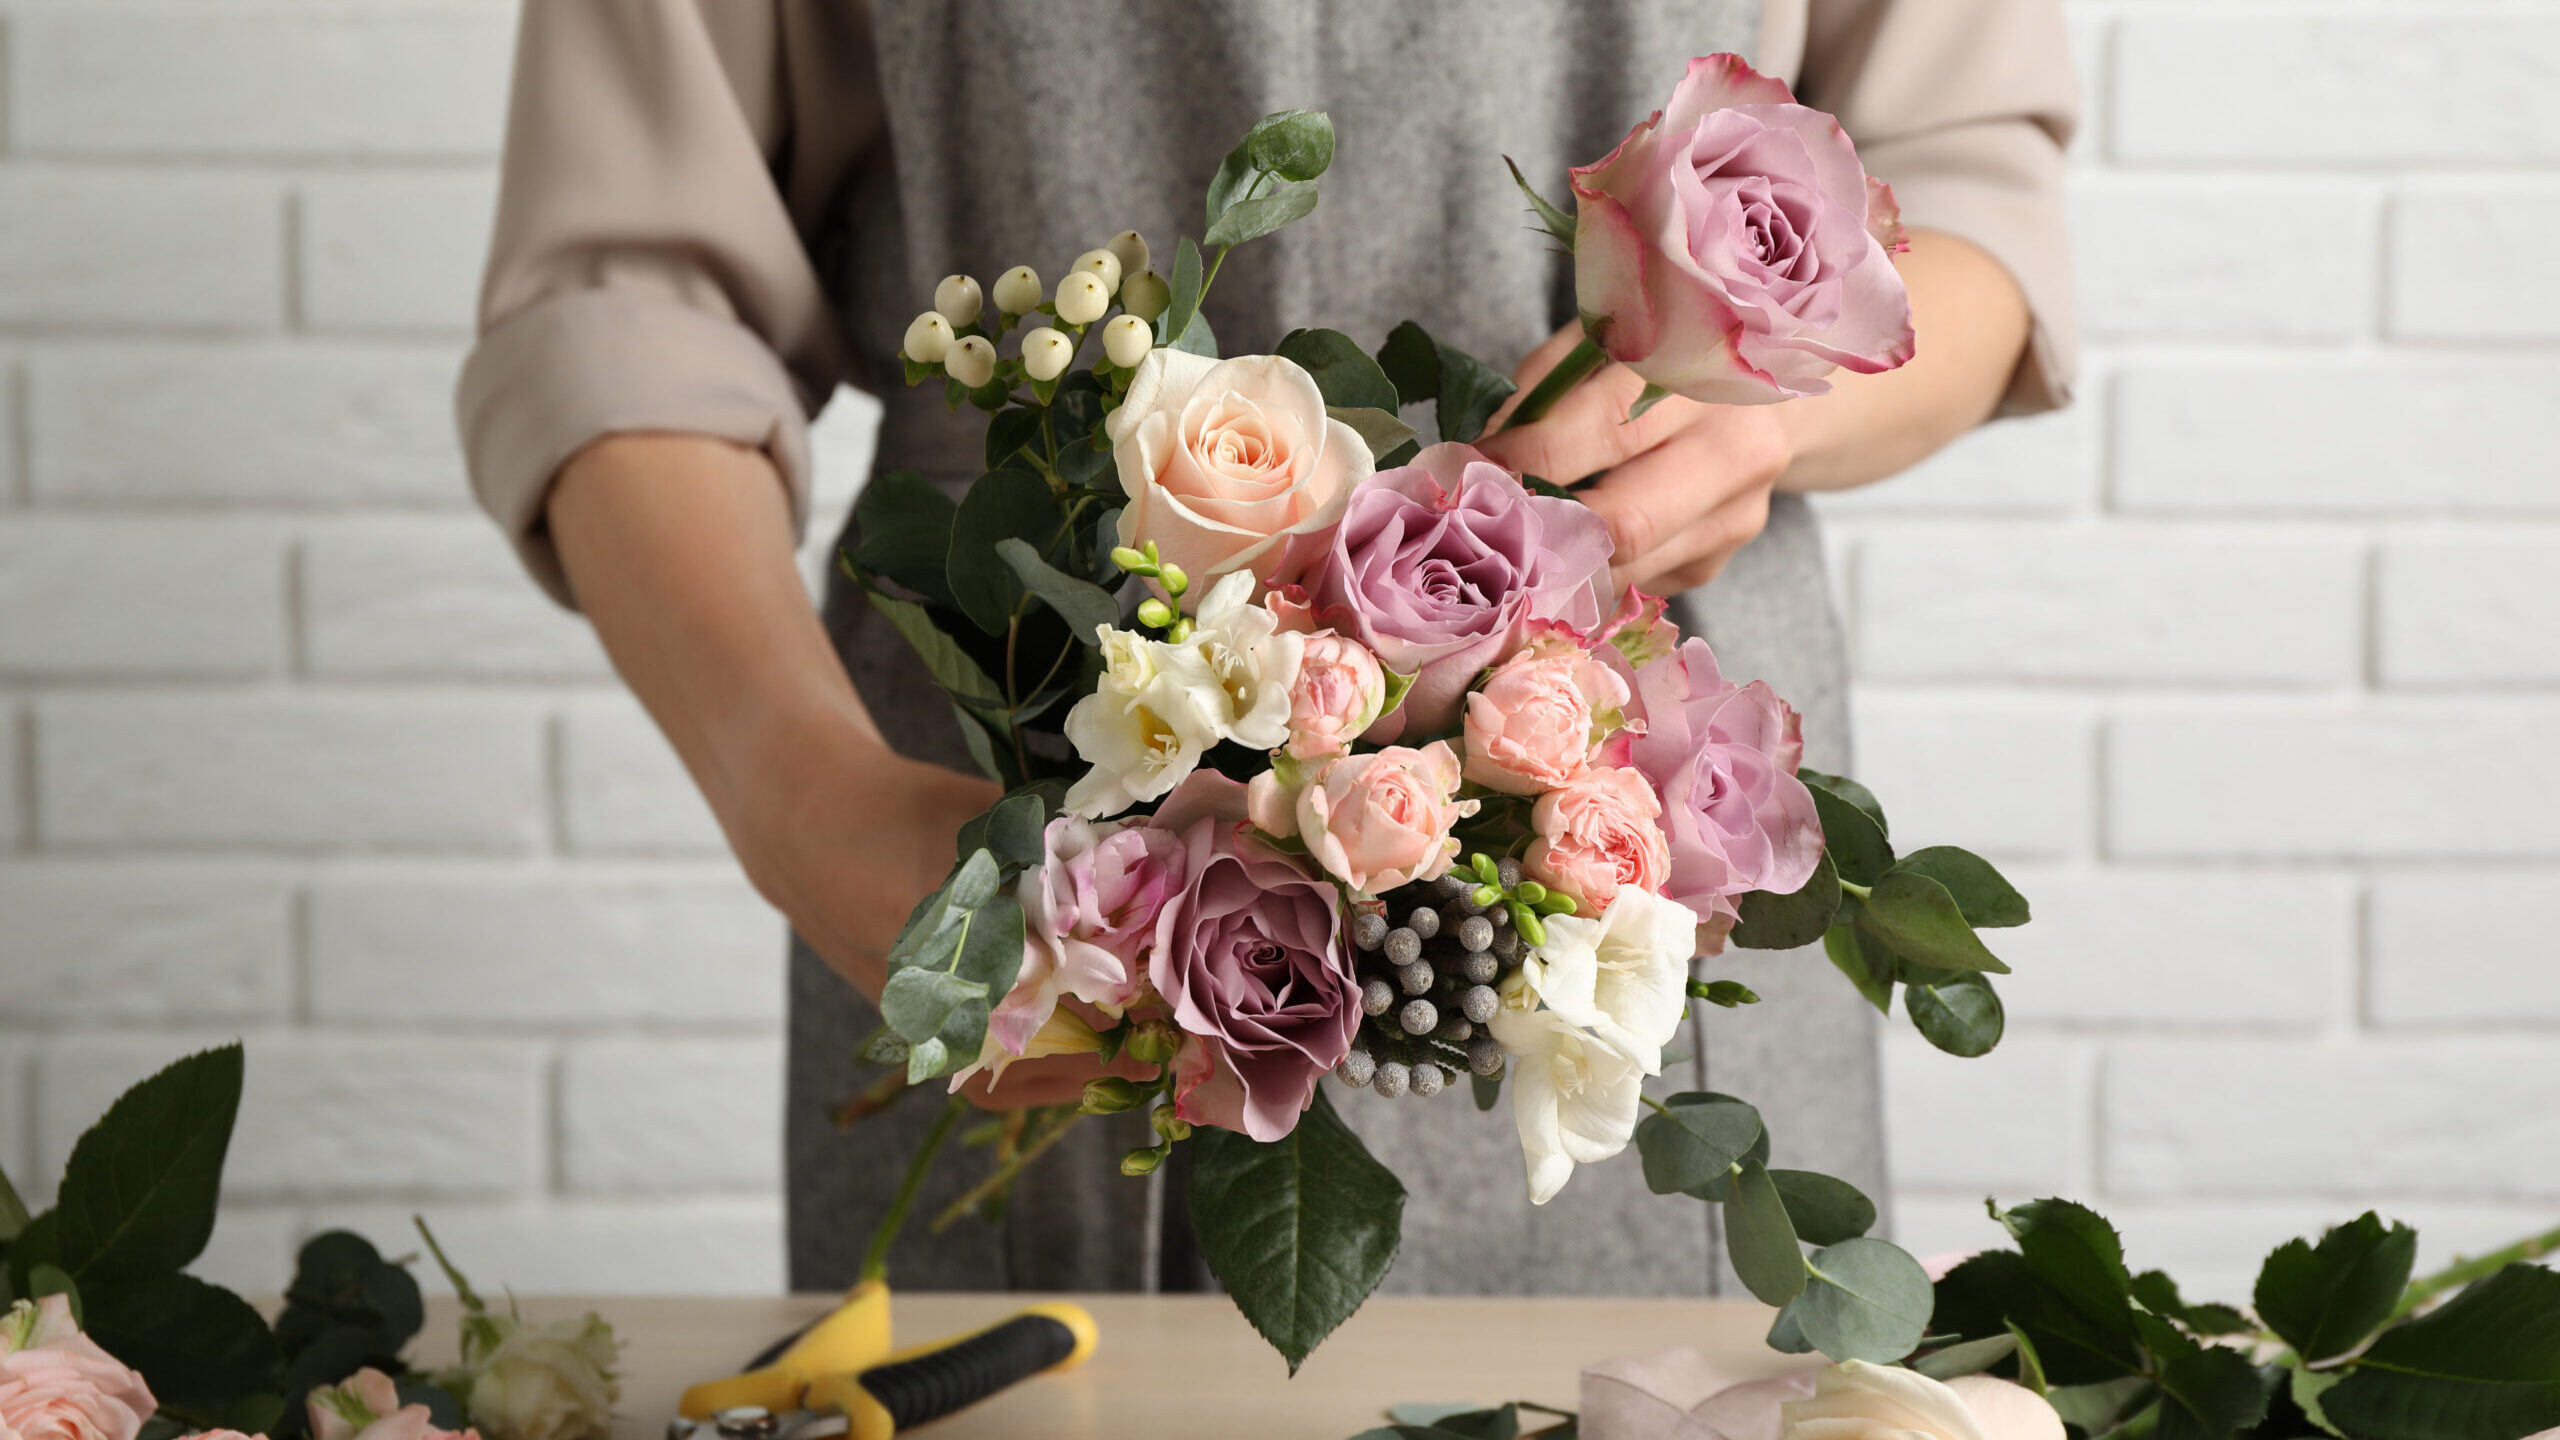 Florist,Creating,Beautiful,Bouquet,At,Table,Indoors,,Closeup